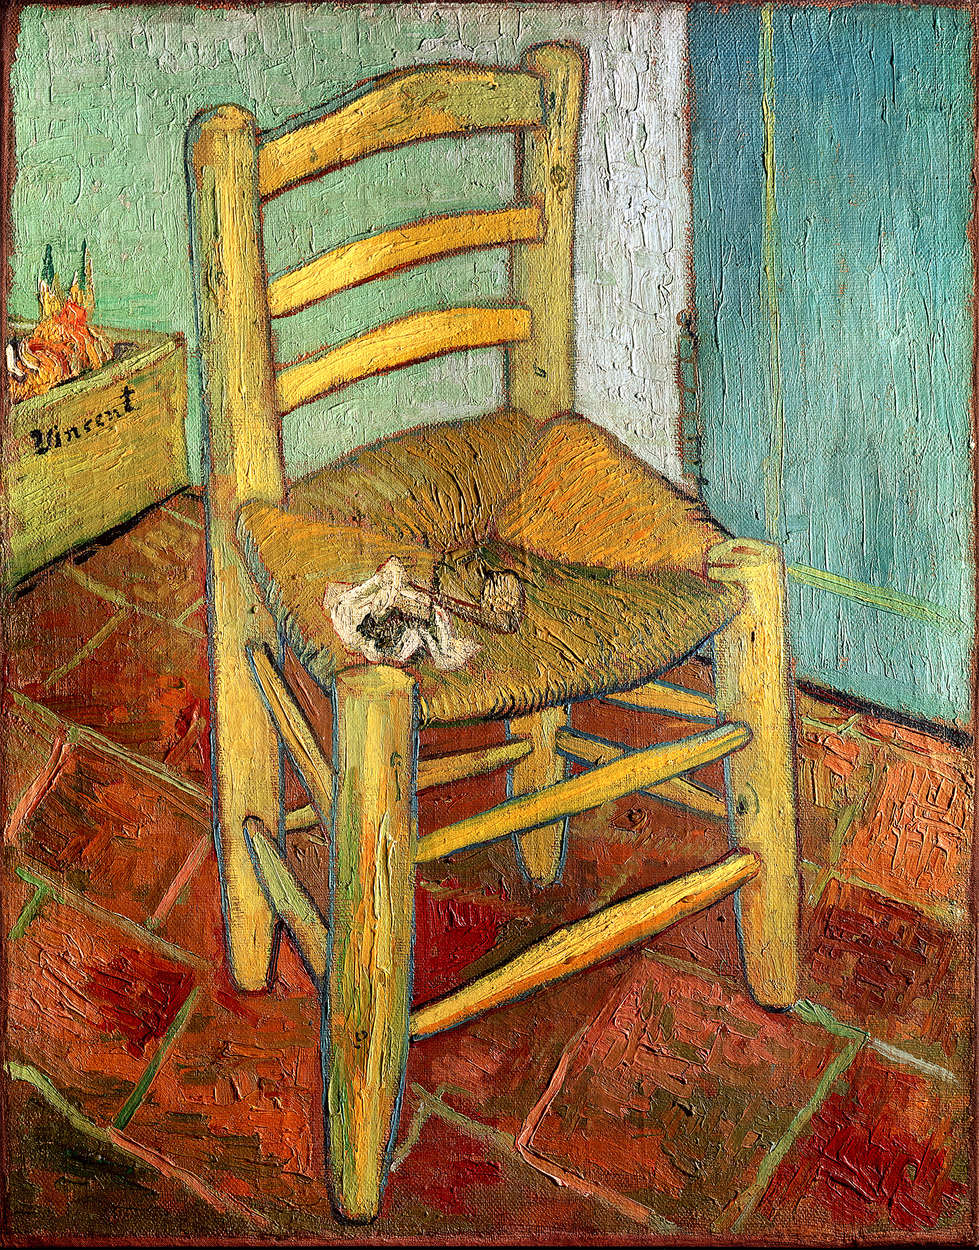             Fotomurali "La sedia di Vincent" di Vincent van Gogh
        